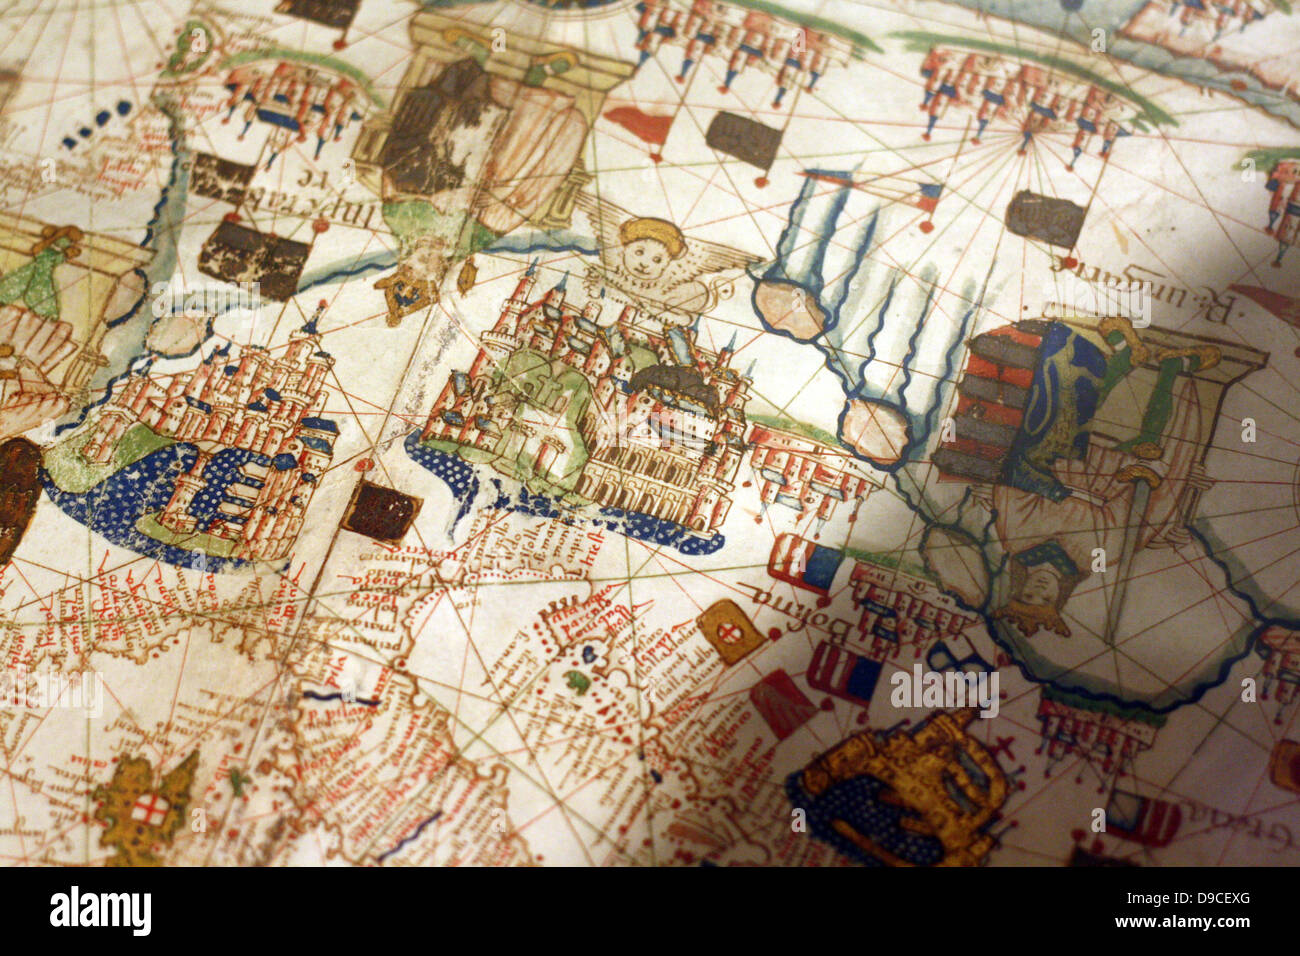 Norden (oben) Blick auf eine Navigationshilfe, Karte von Europa und dem Nahen Osten von Jacopo Russo 1528, Messina. Sizilien. Übersicht Schweiz, Italien, Balkan und Ungarn Stockfoto